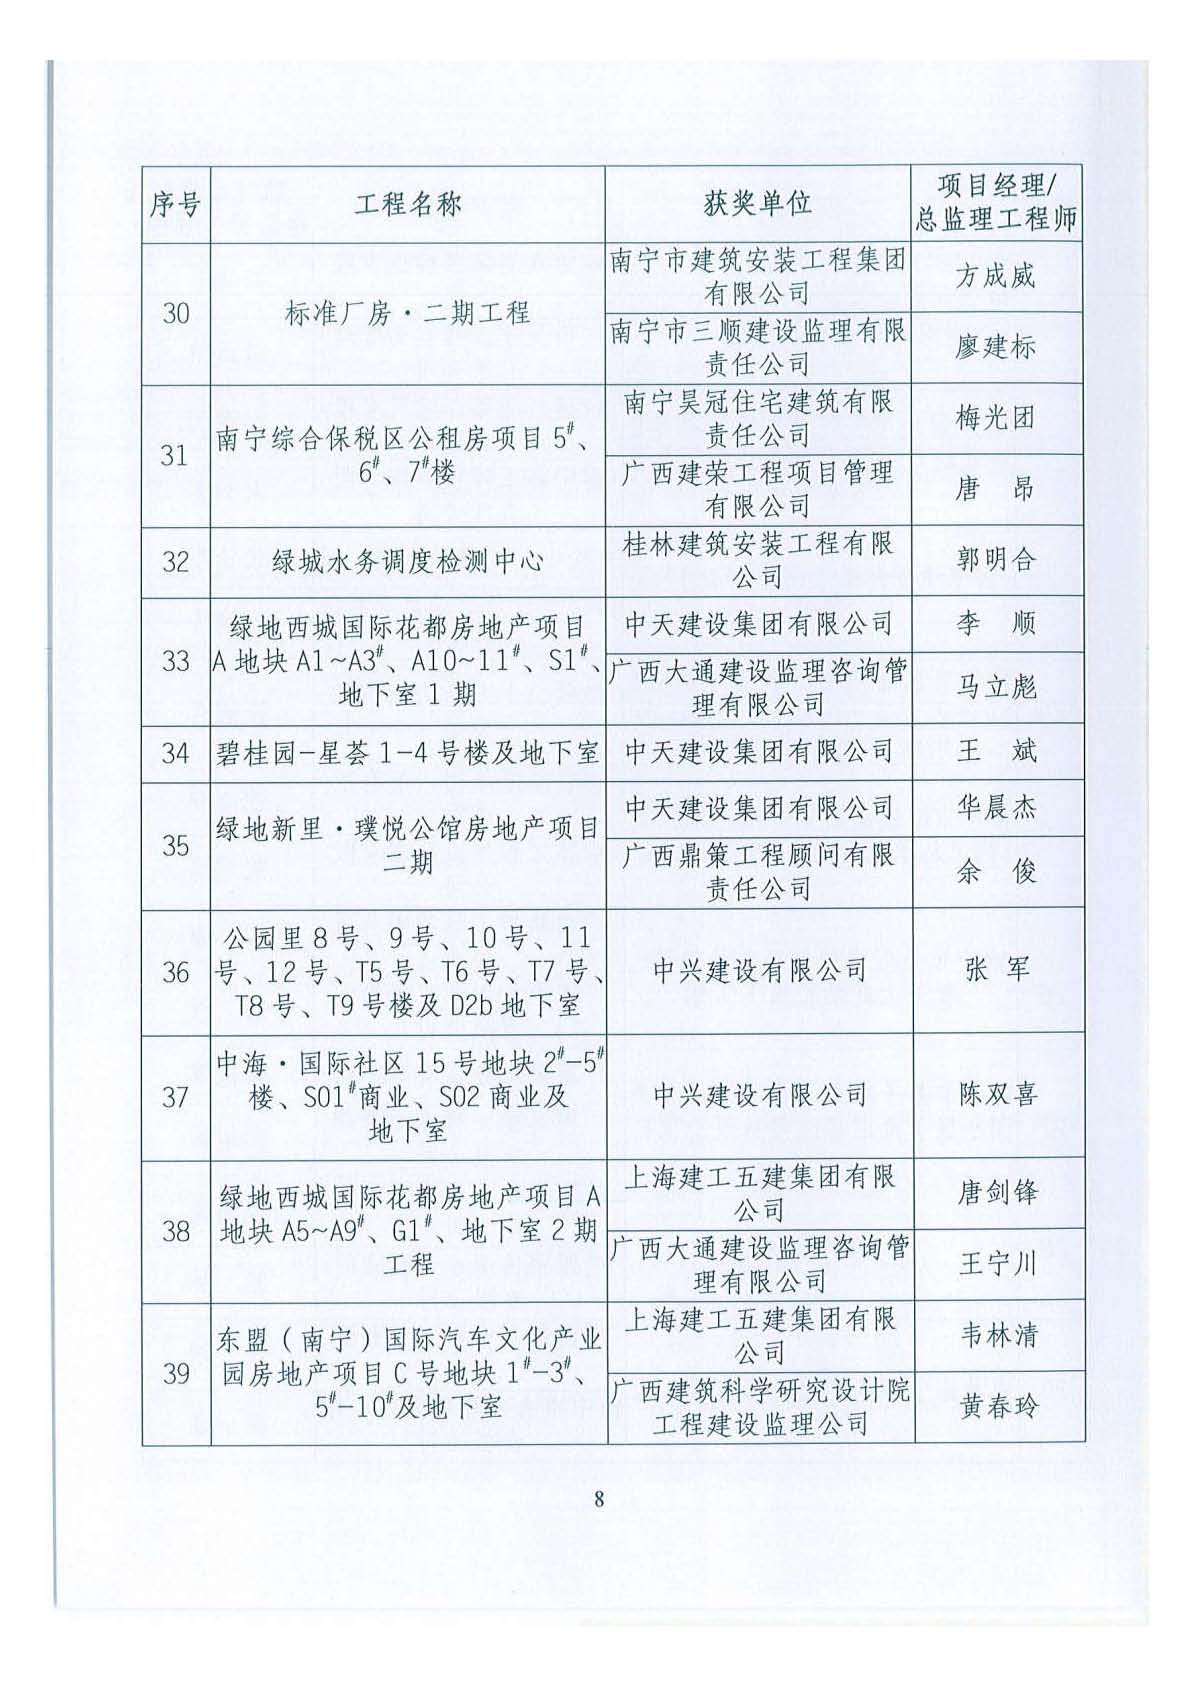 关于公布2018年下半年广西壮族自治区建设工程施工安全文明标准化工地的通知 _页面_08.jpg